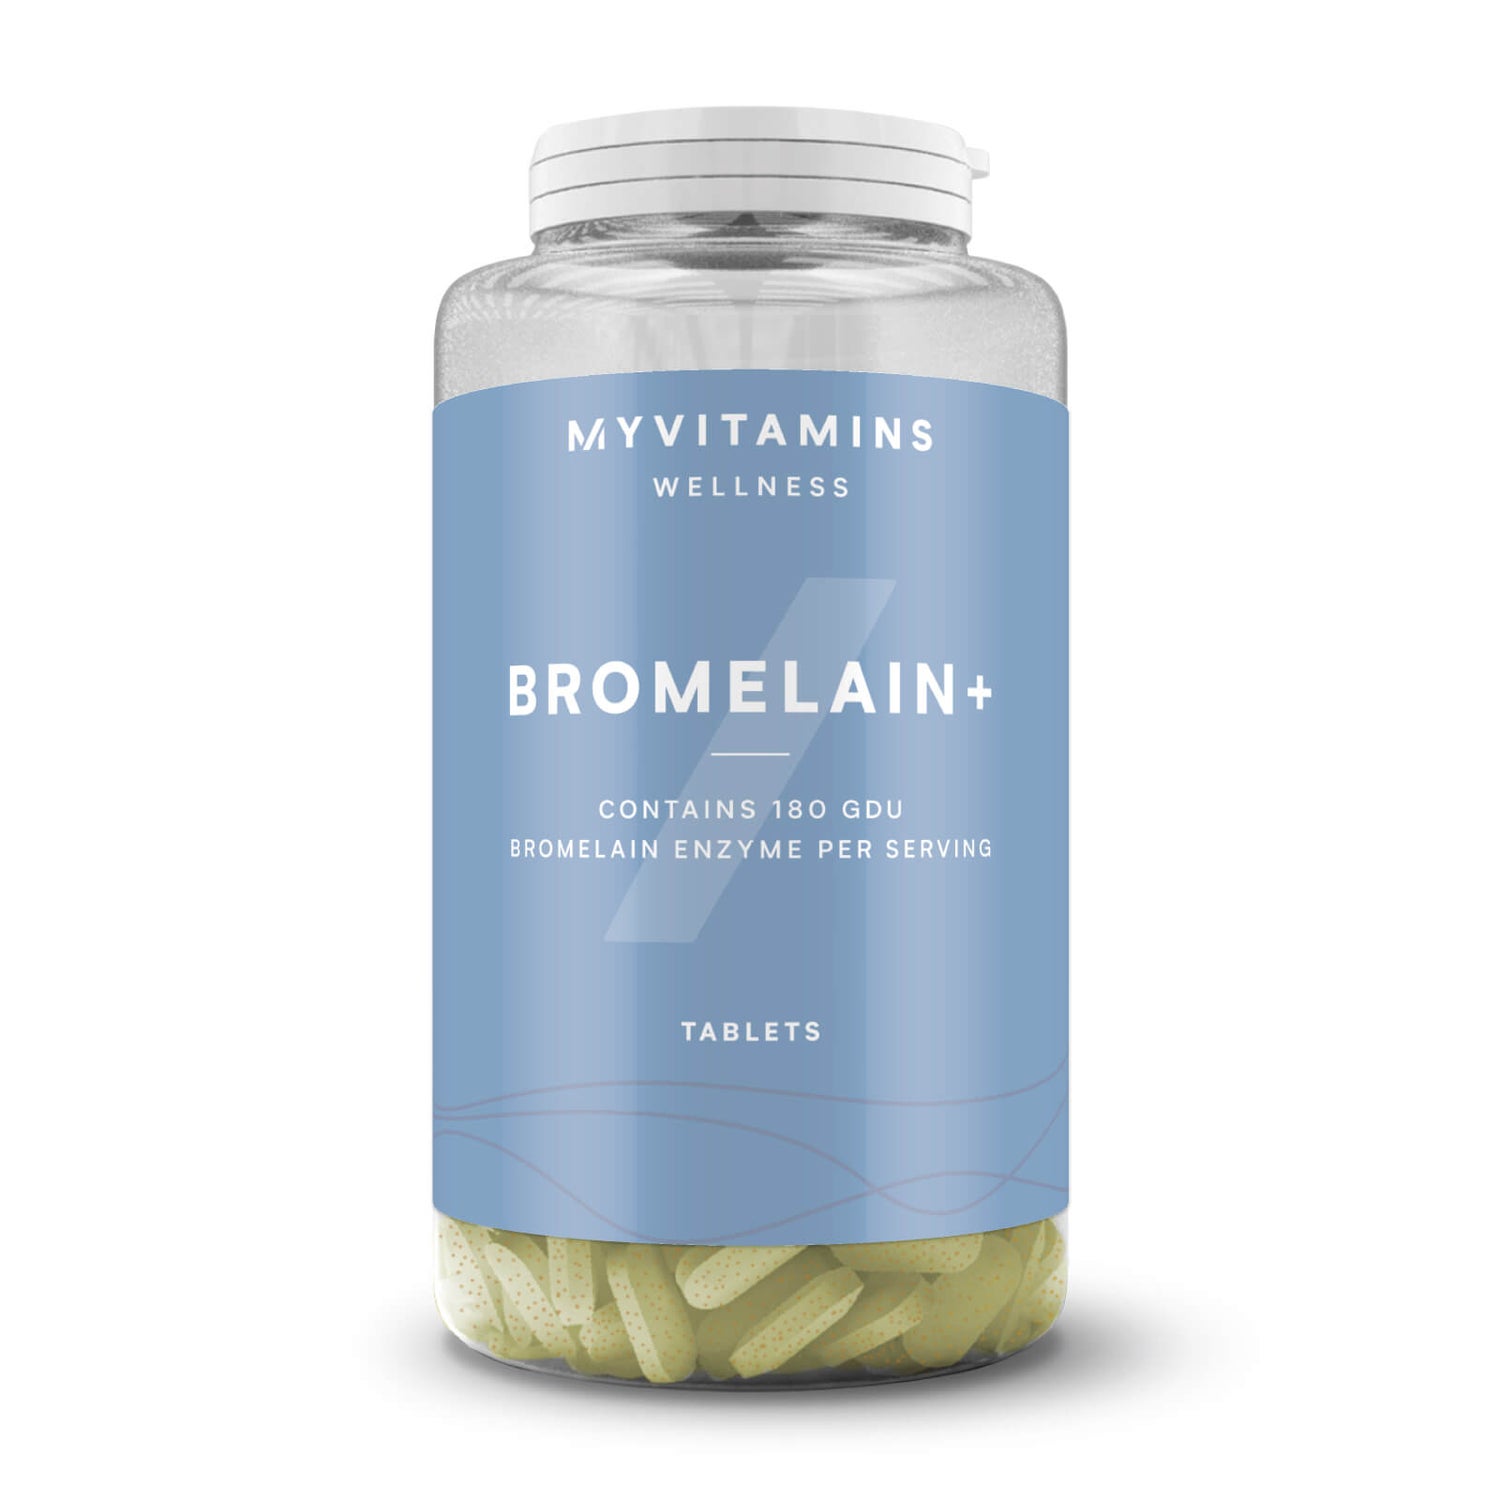 Bromelaínové tabletky - 30tablets